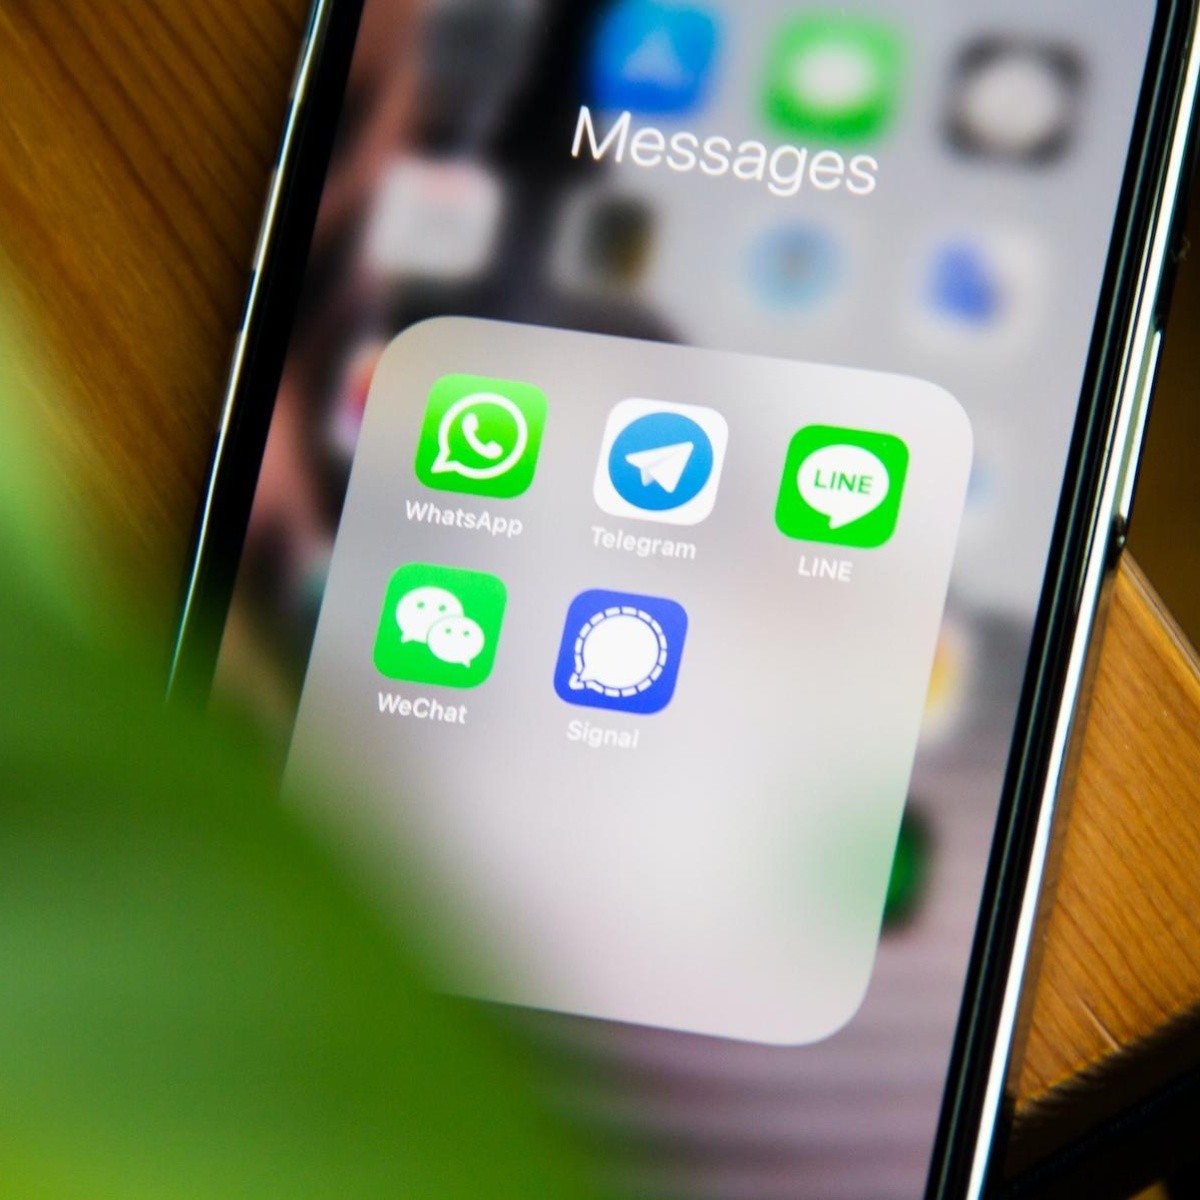 Qué Celulares no serán compatibles con WhatsApp en enero de 2024? - Apps -  Tecnología 